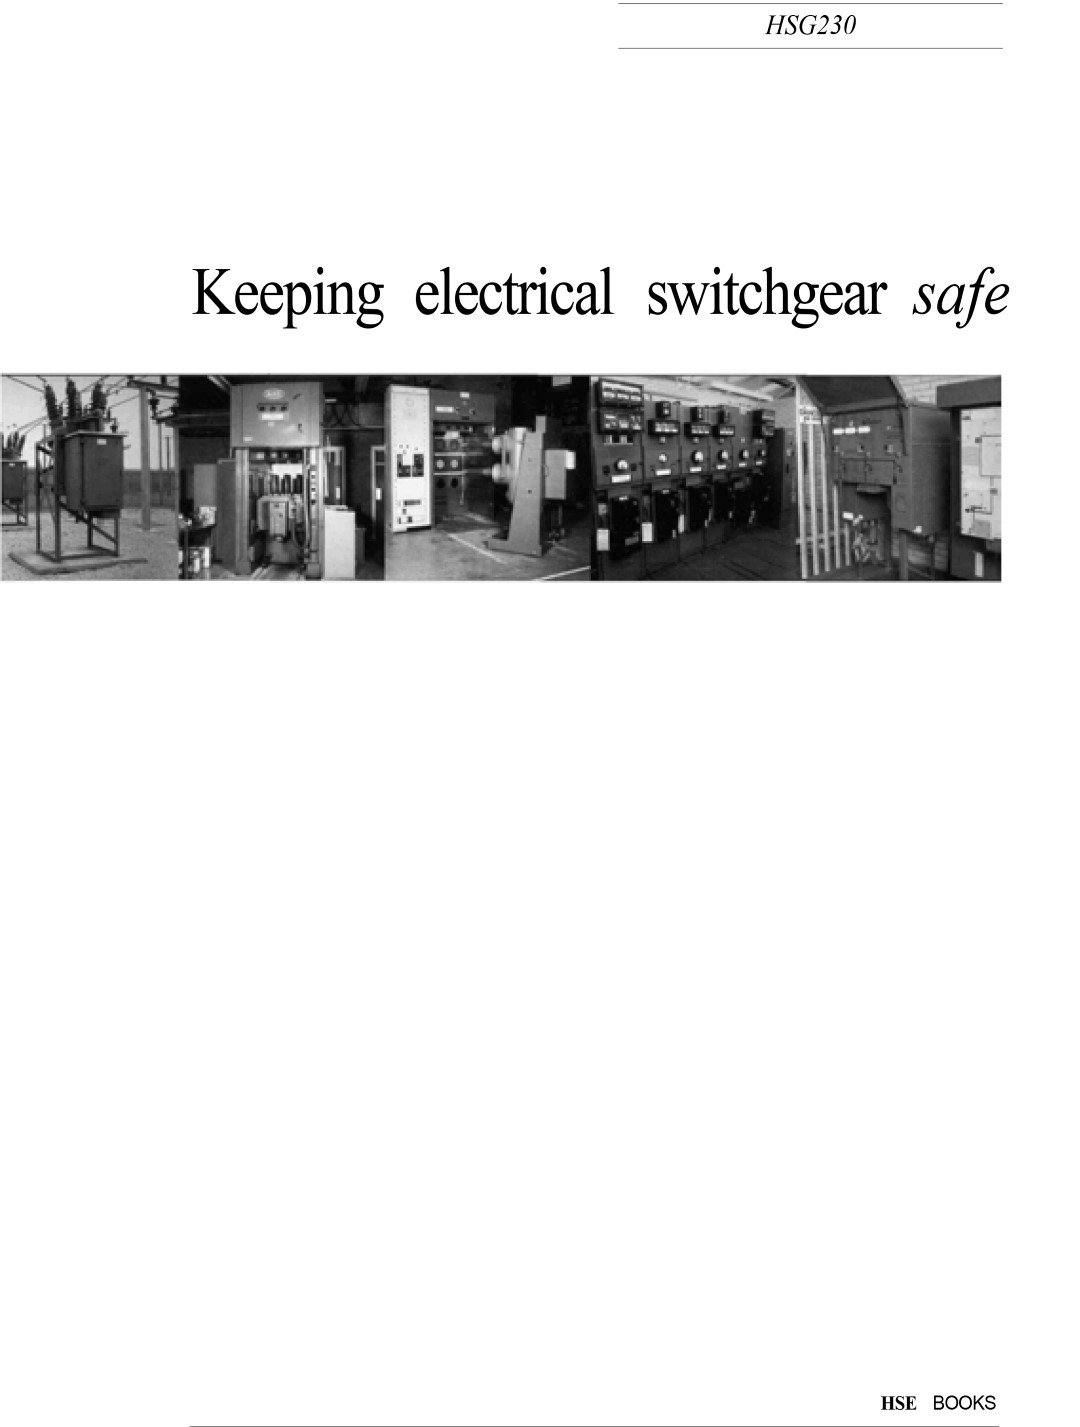 Switchgear Health & Safety